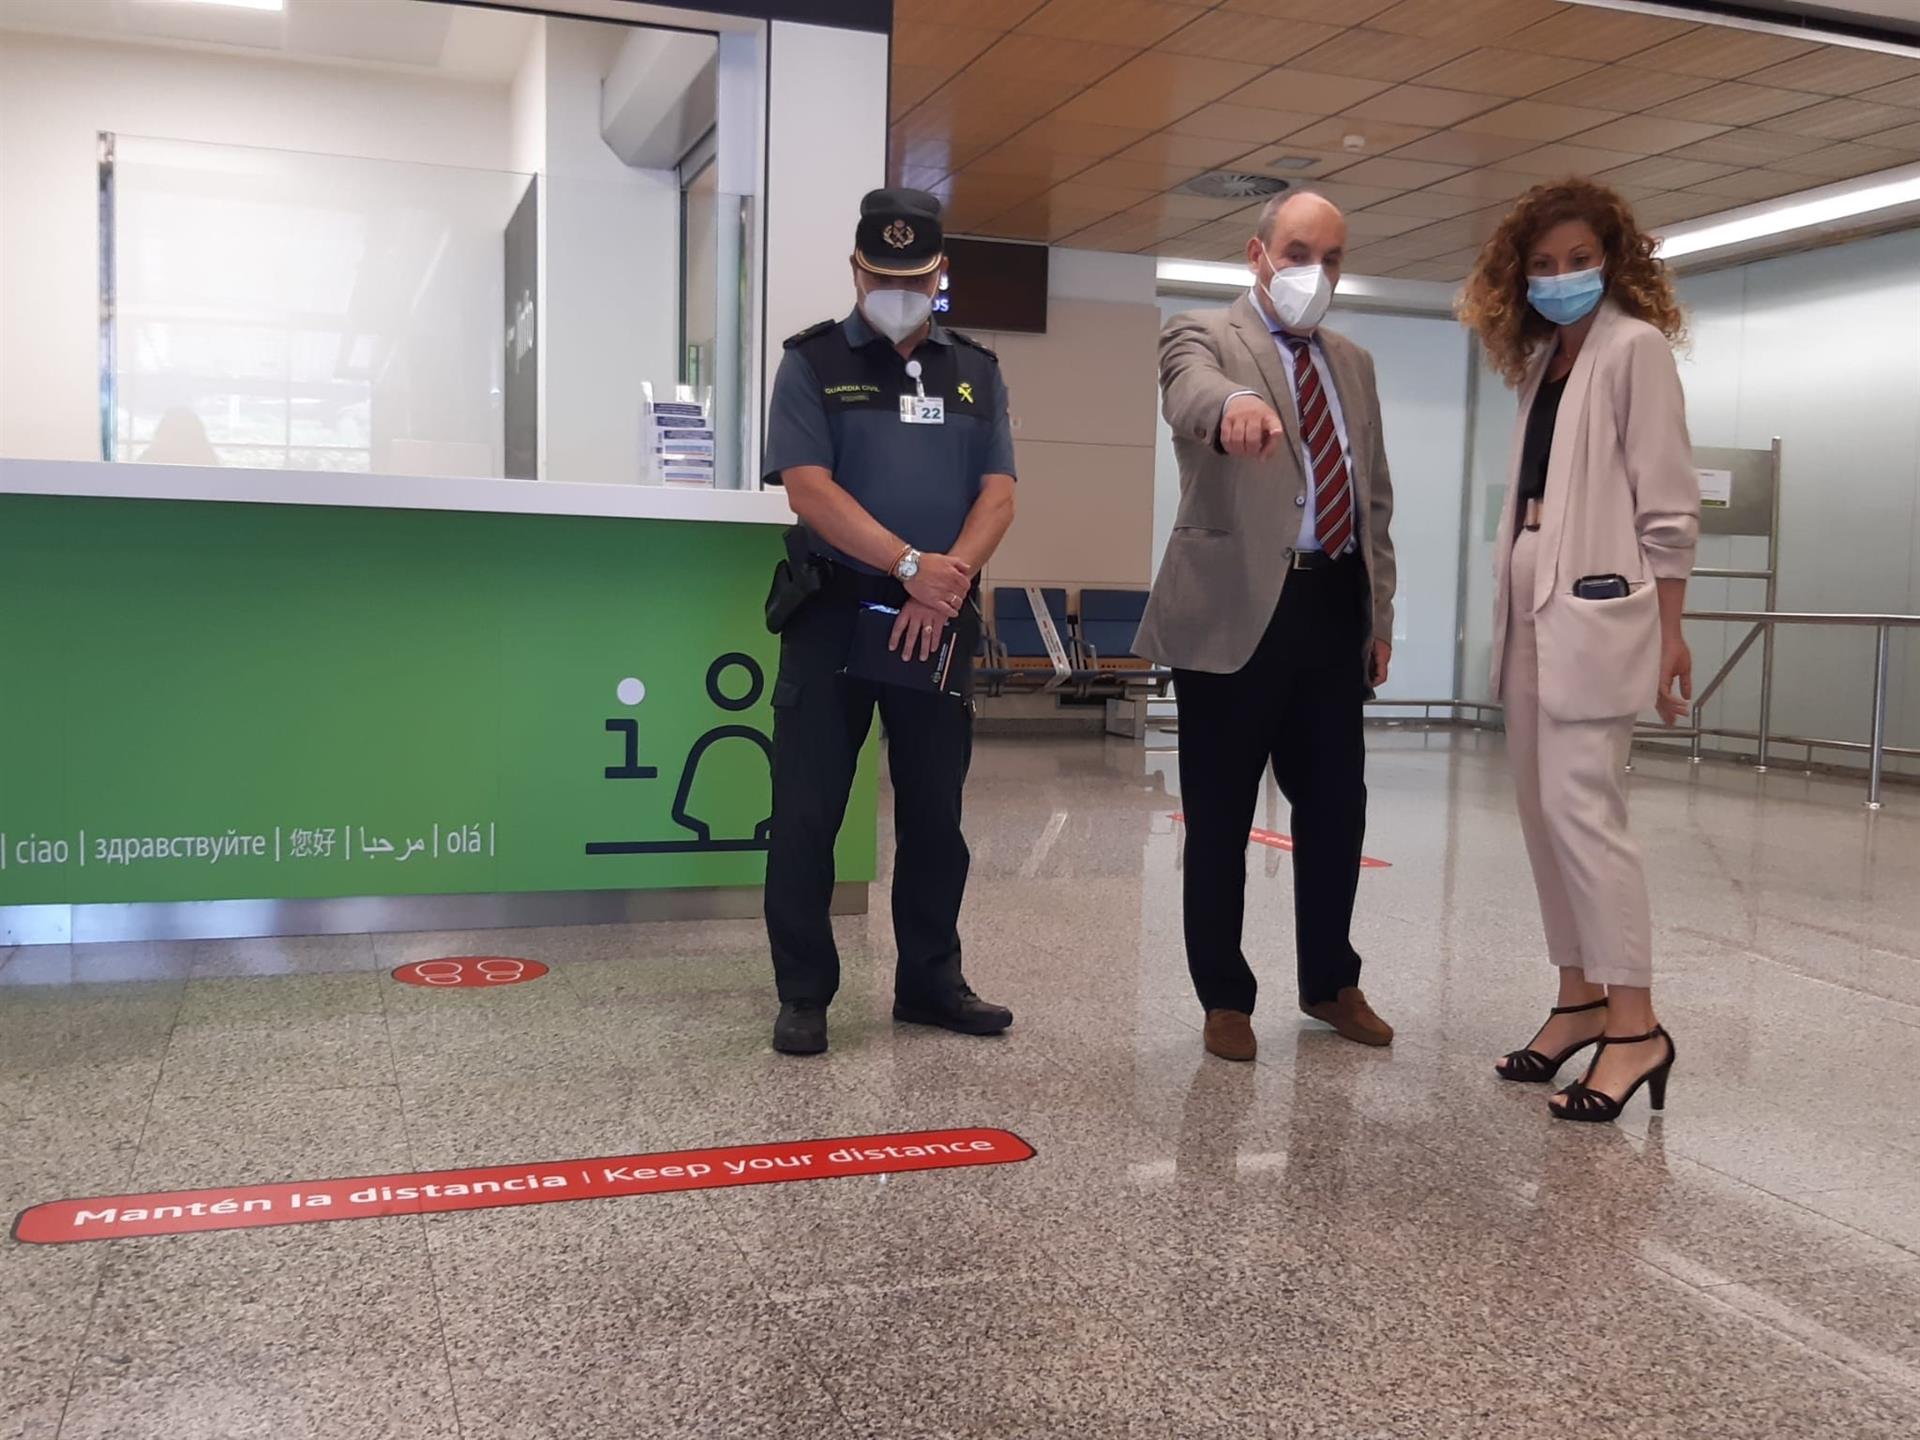 La delegada del Gobierno visita el aeropuerto para comprobar las medidas de seguridad - DELEGACIÓN DEL GOBIERNO